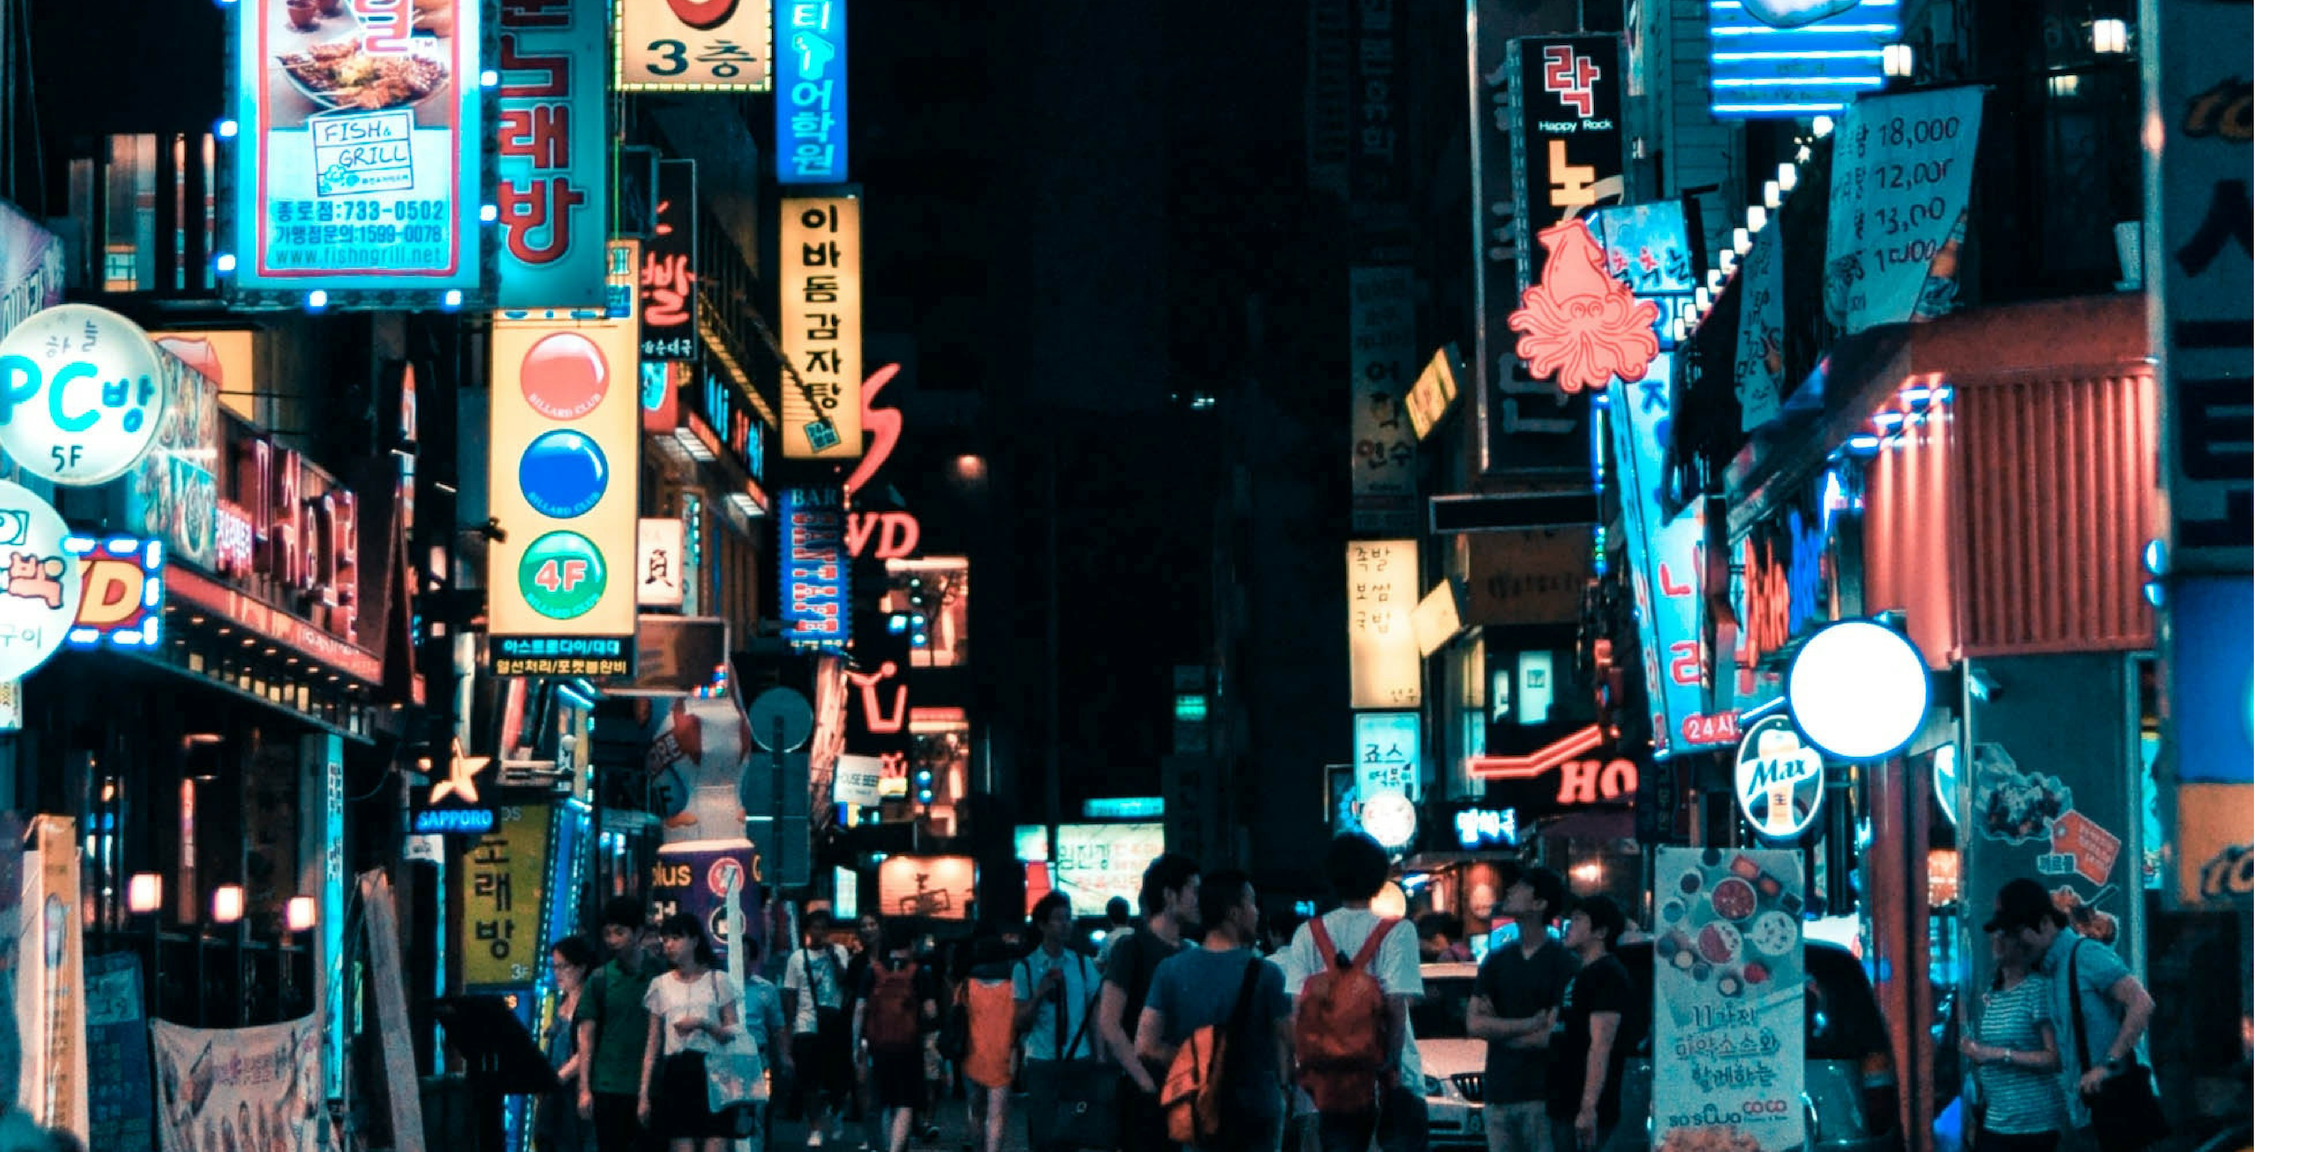 Korean Street at night